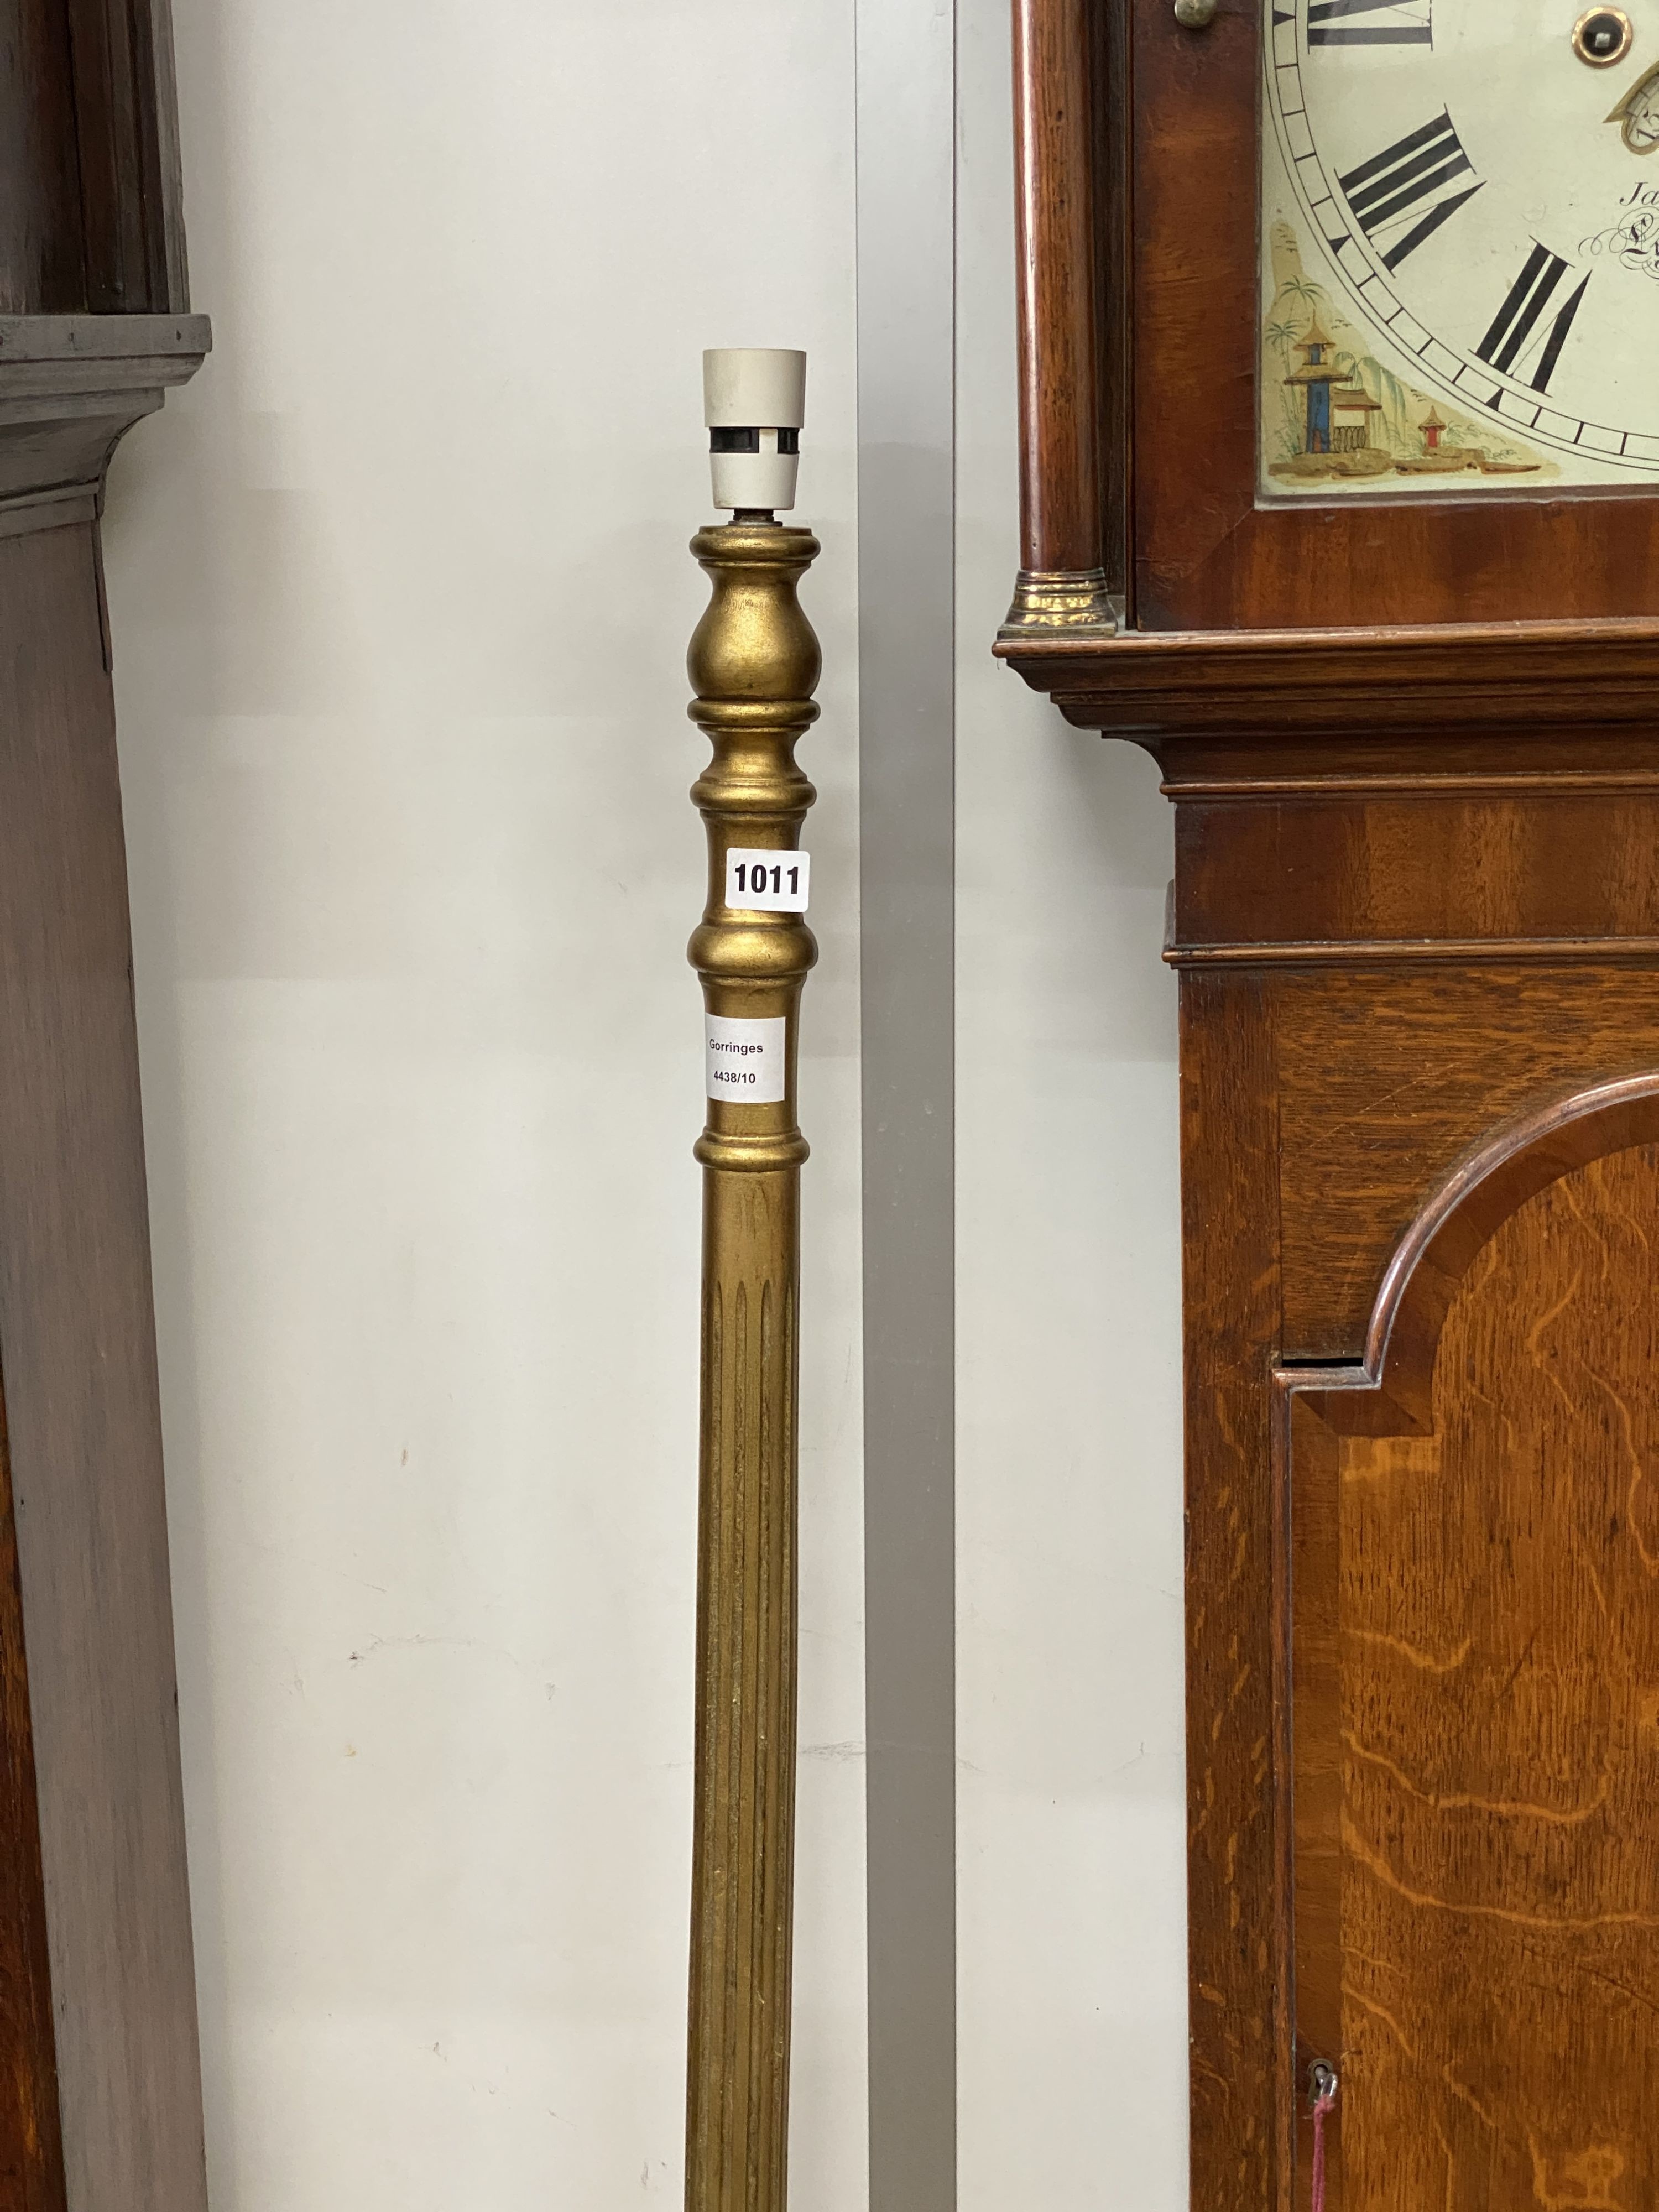 A gilt lamp standard, height 150cm